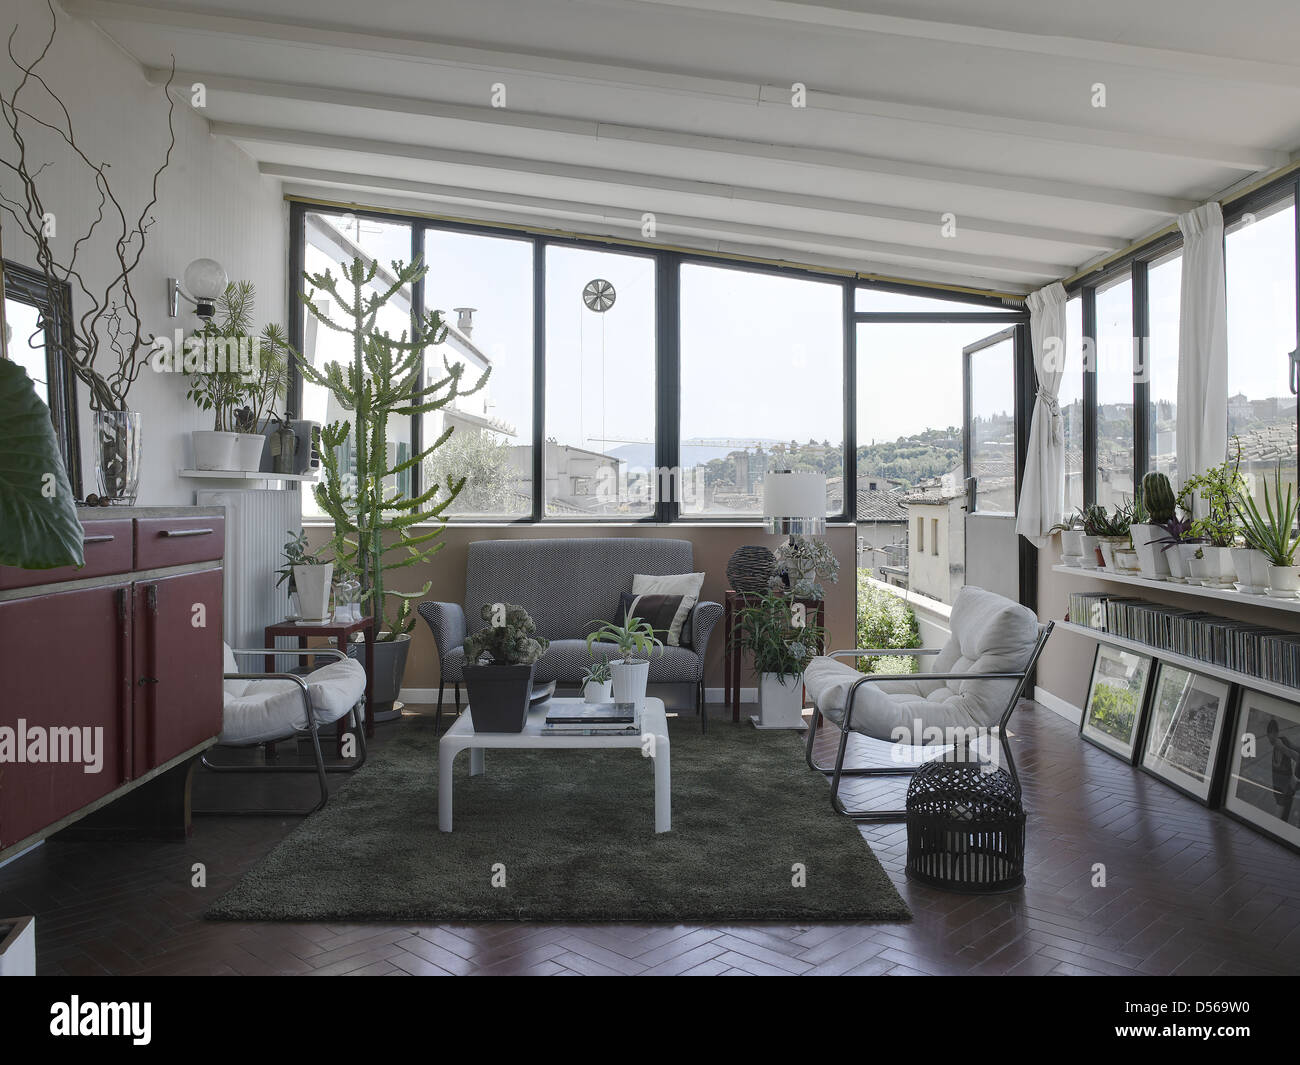 Soggiorno in un italiano appartamento tradizionale con molte piante Foto Stock